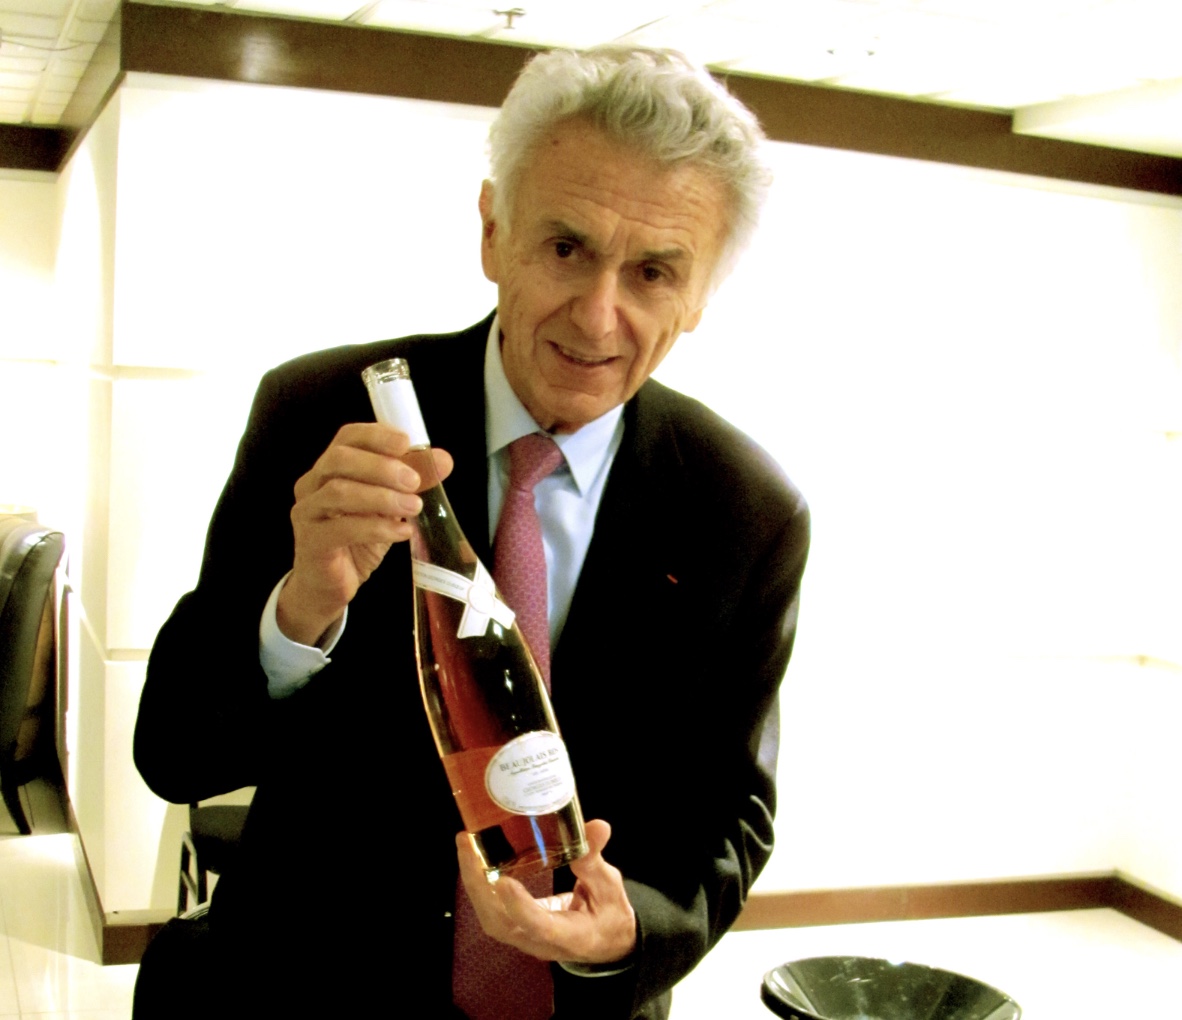 Un homme en costume tenant une bouteille de Beaujolais.